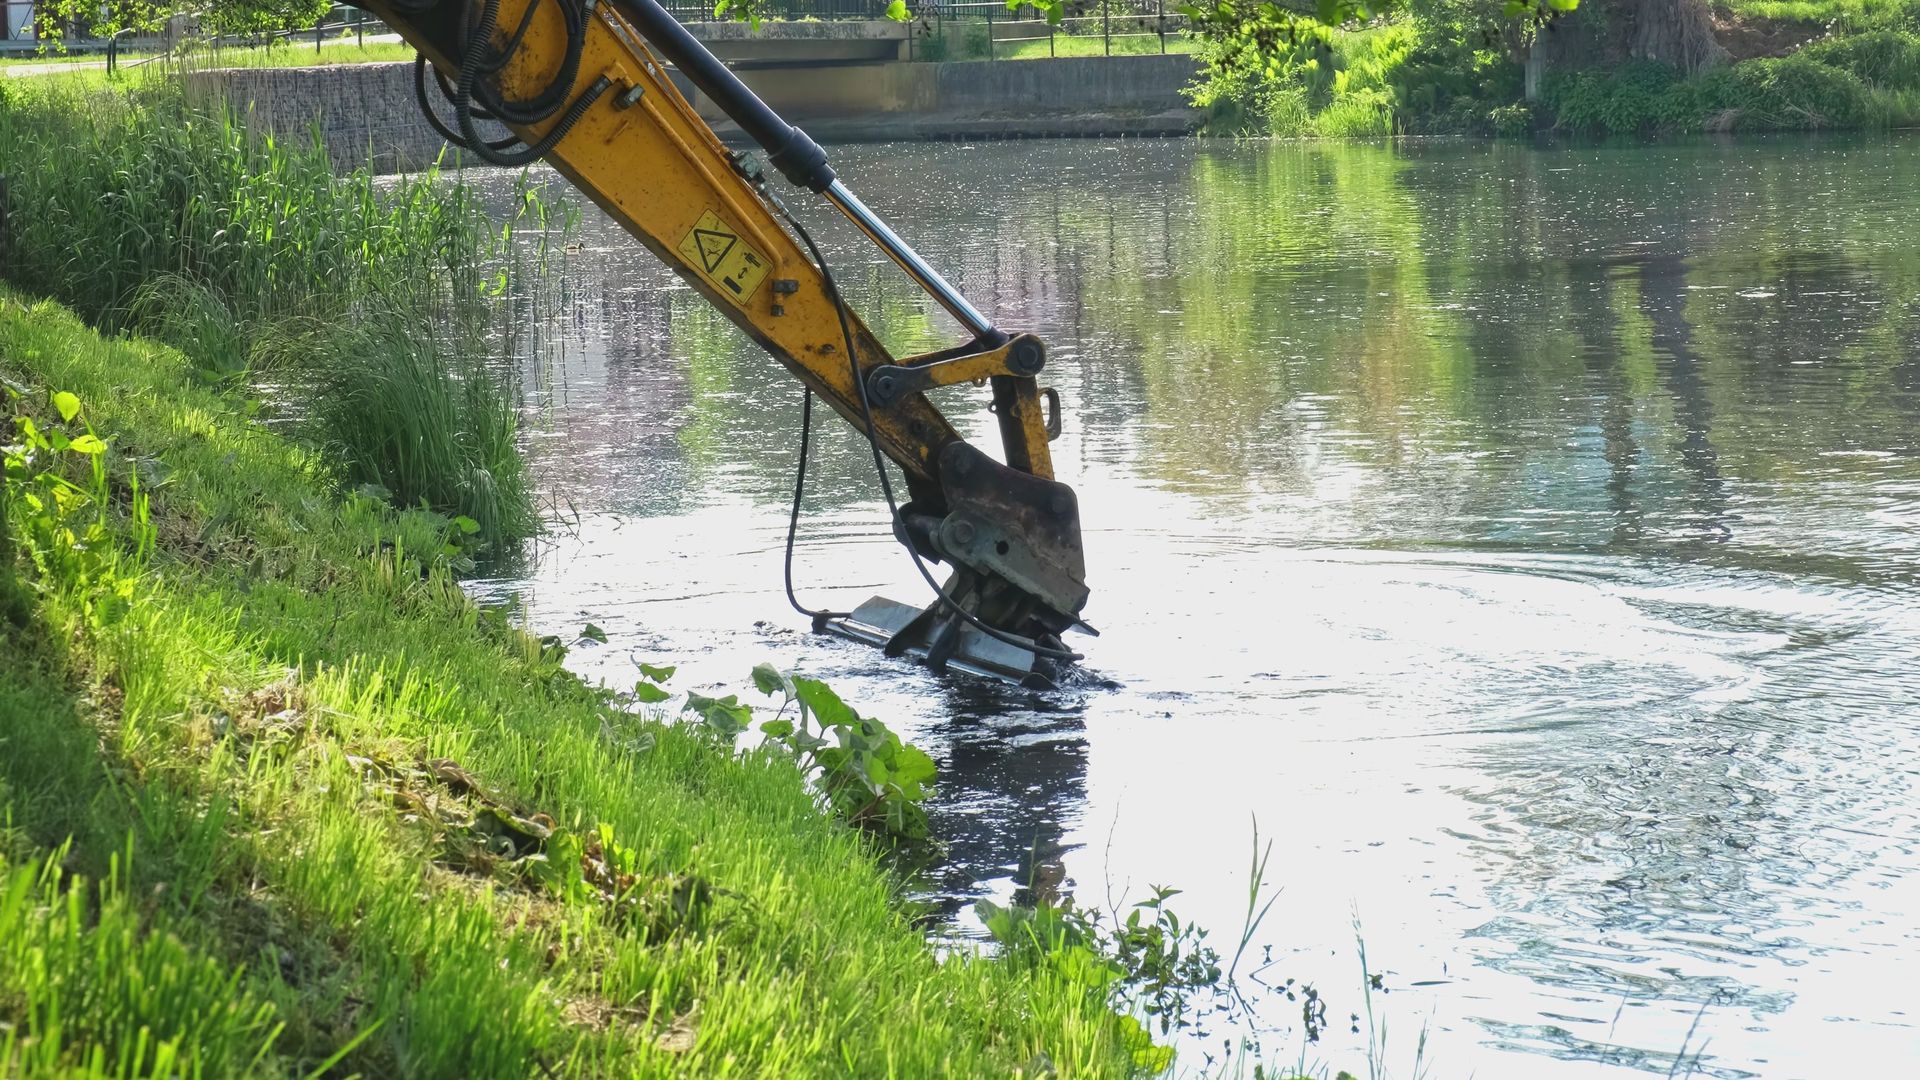 Industrial Heavy Duty Excavator Dredging River